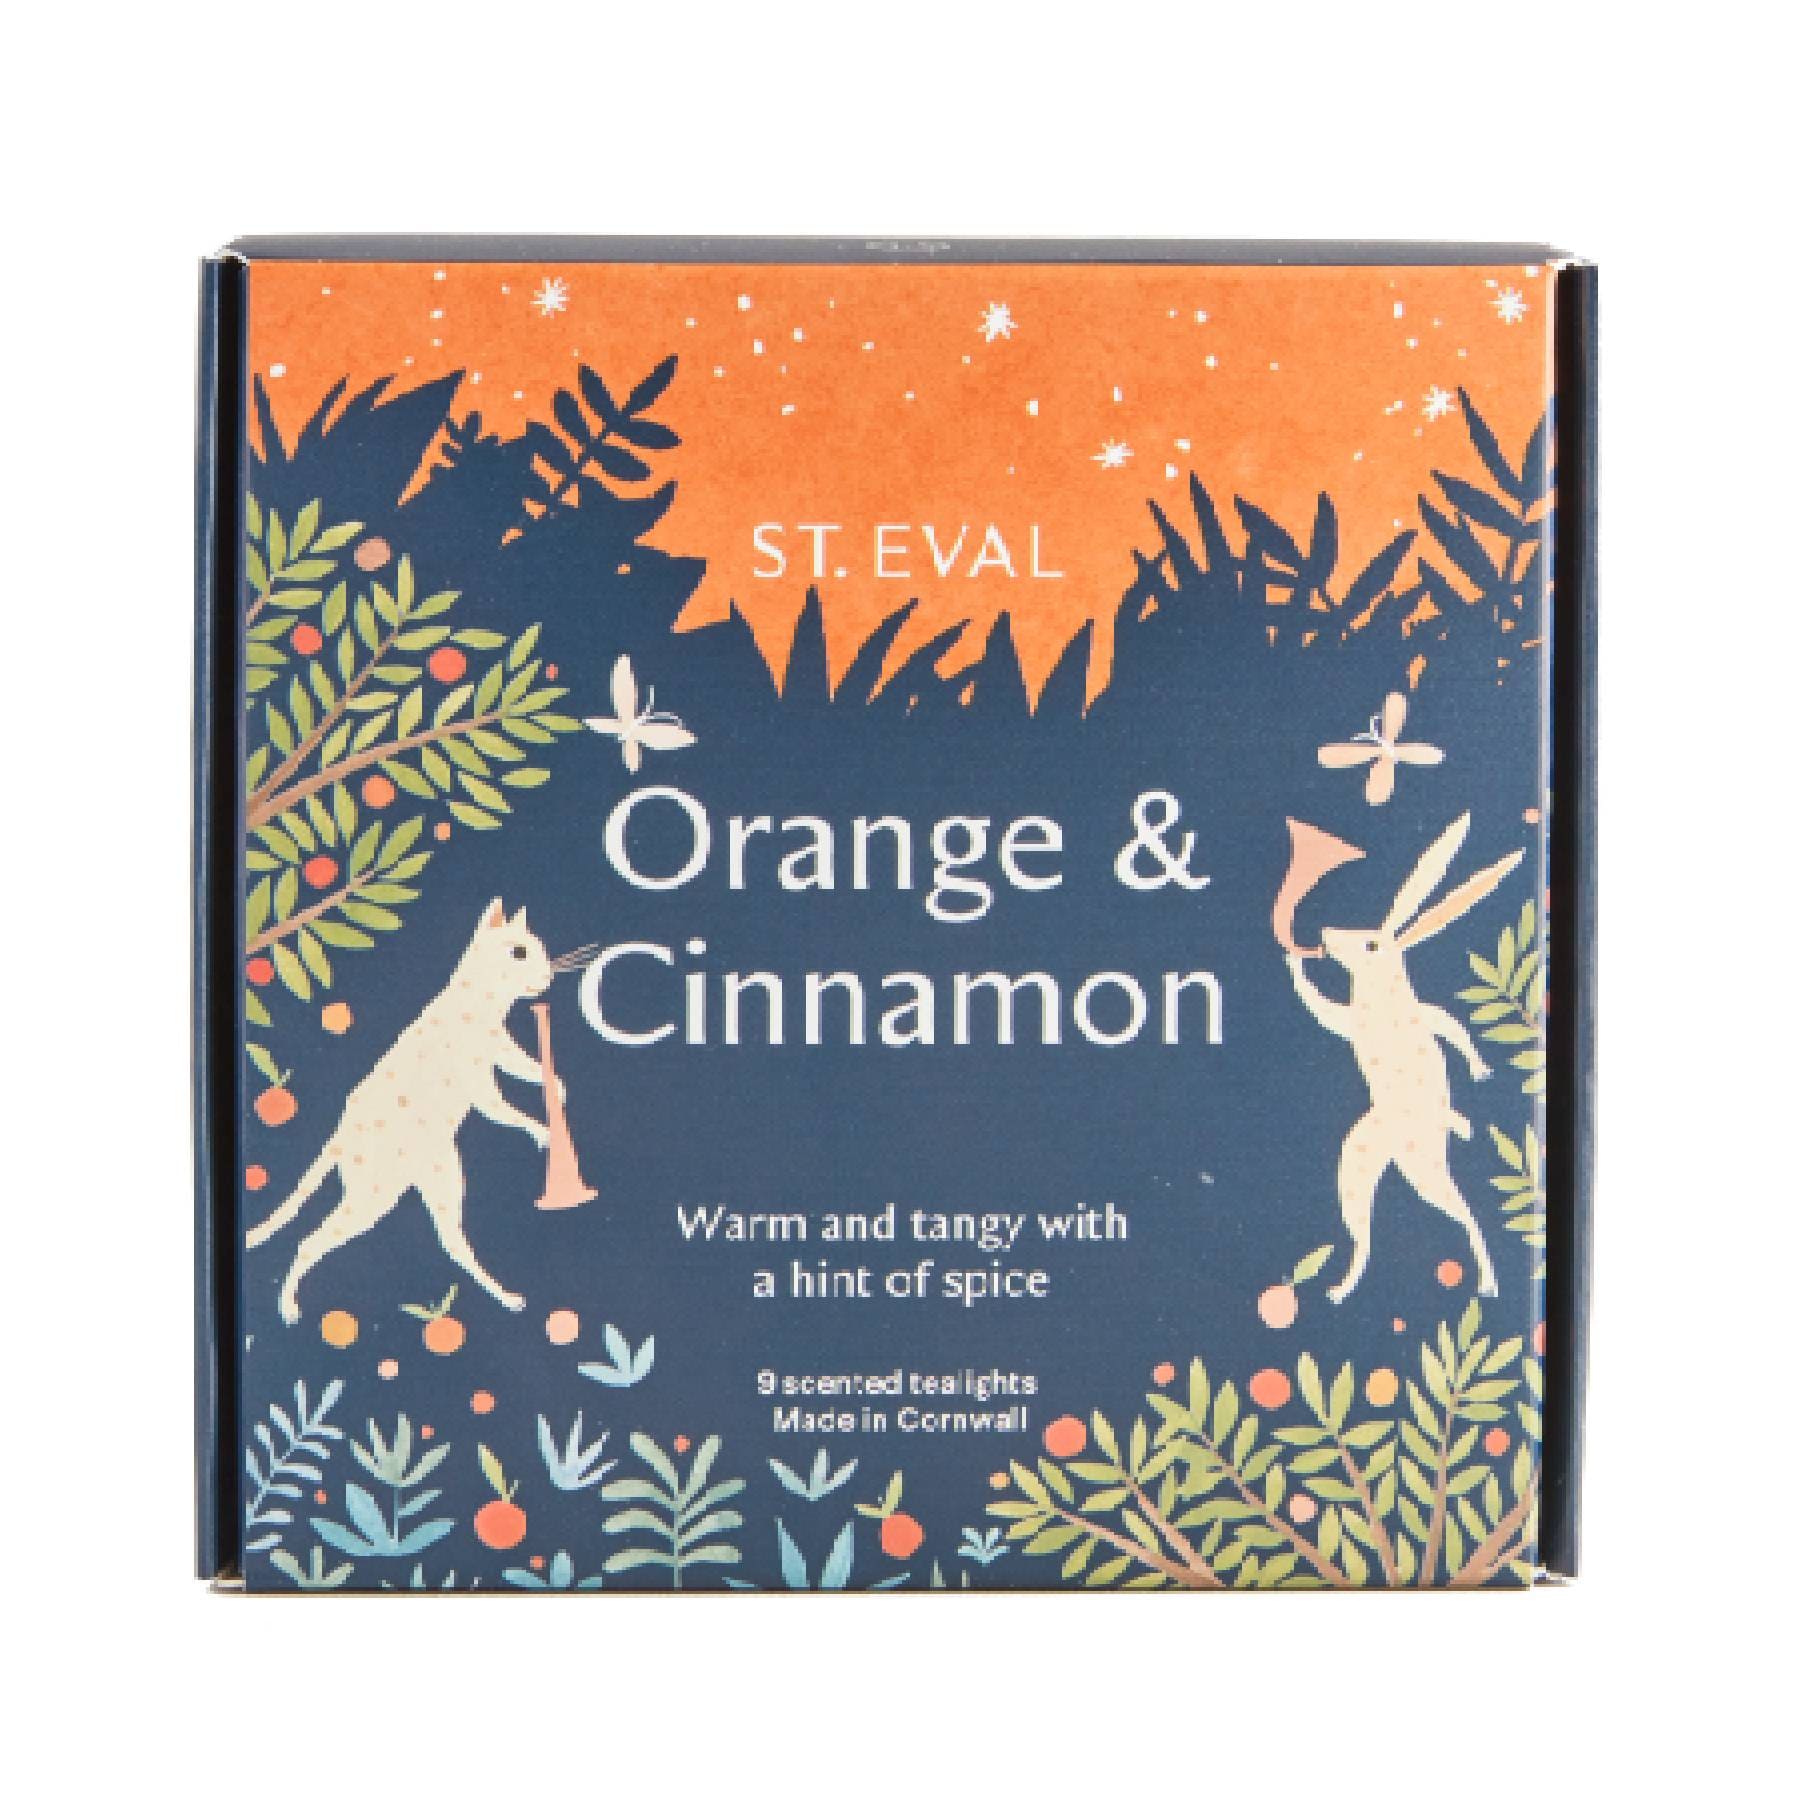 Orange & cinnamon scented tealights